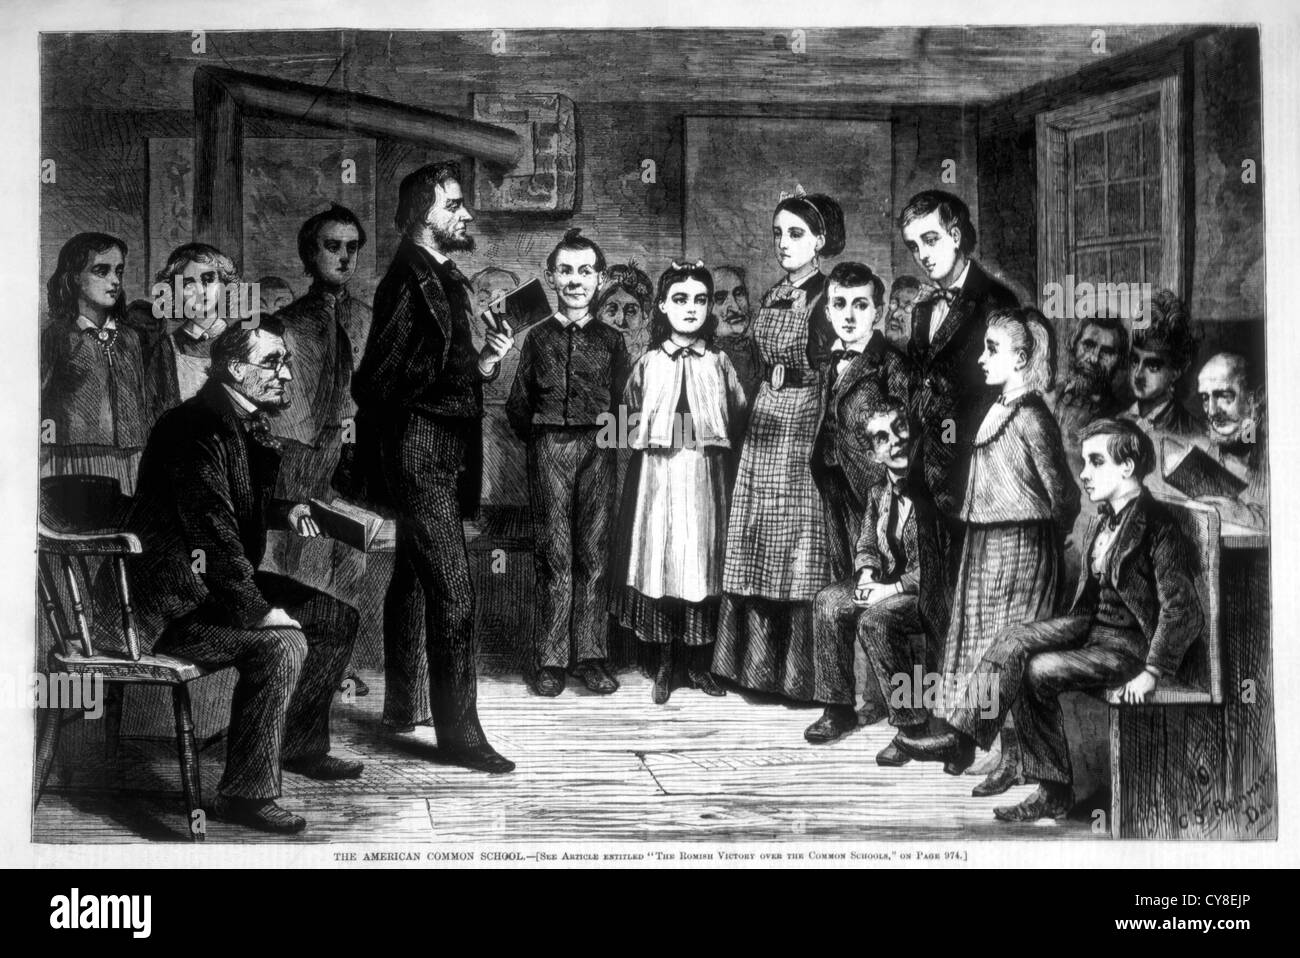 Amerikanische gemeinsame Schule, c.s. Reinhart in Harpers wöchentlich, Gravur, ca. 1872 Stockfoto